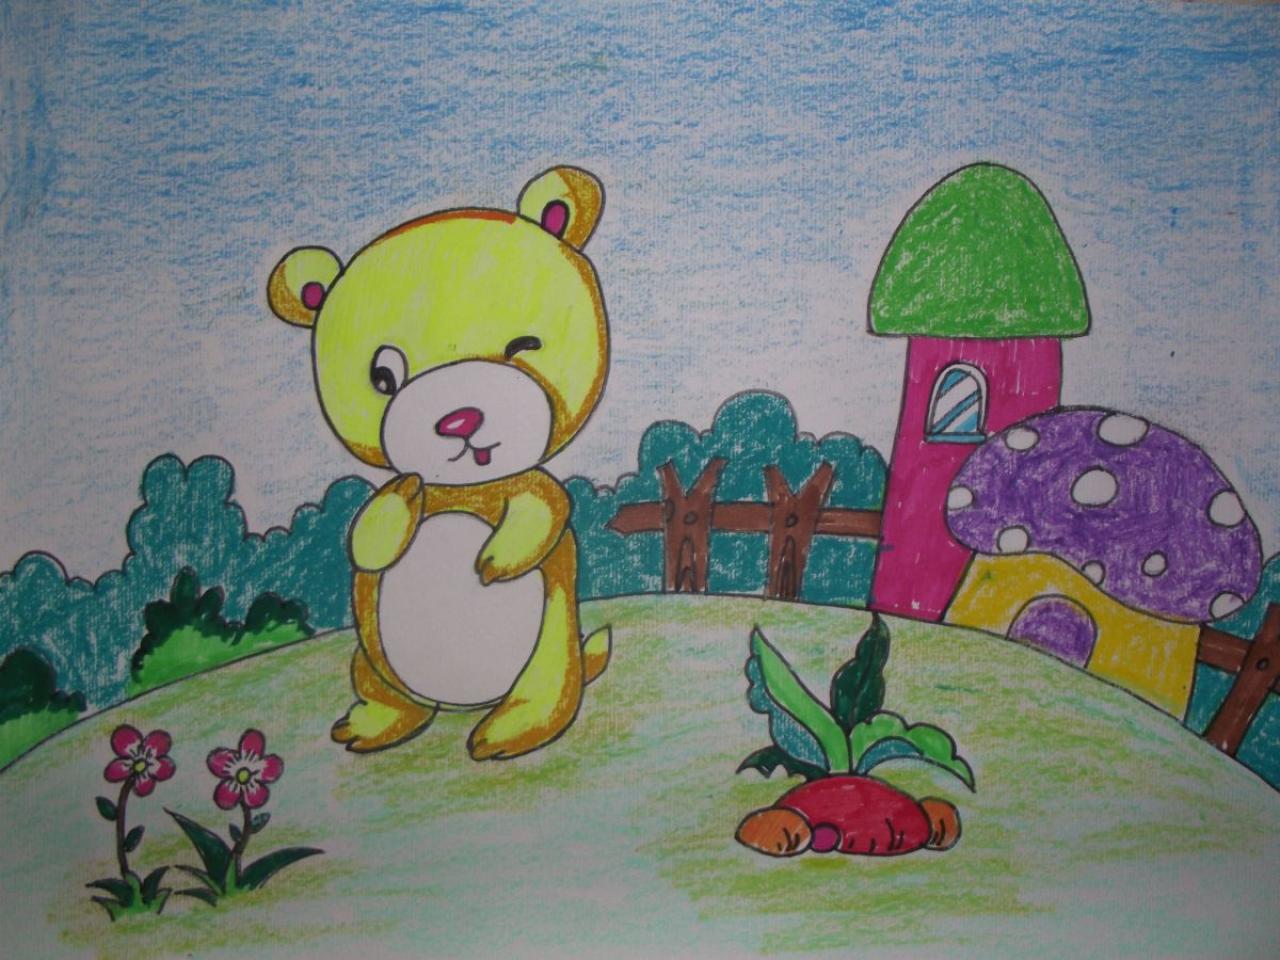 少儿学蜡笔画系列——小熊的家画法 完成稿